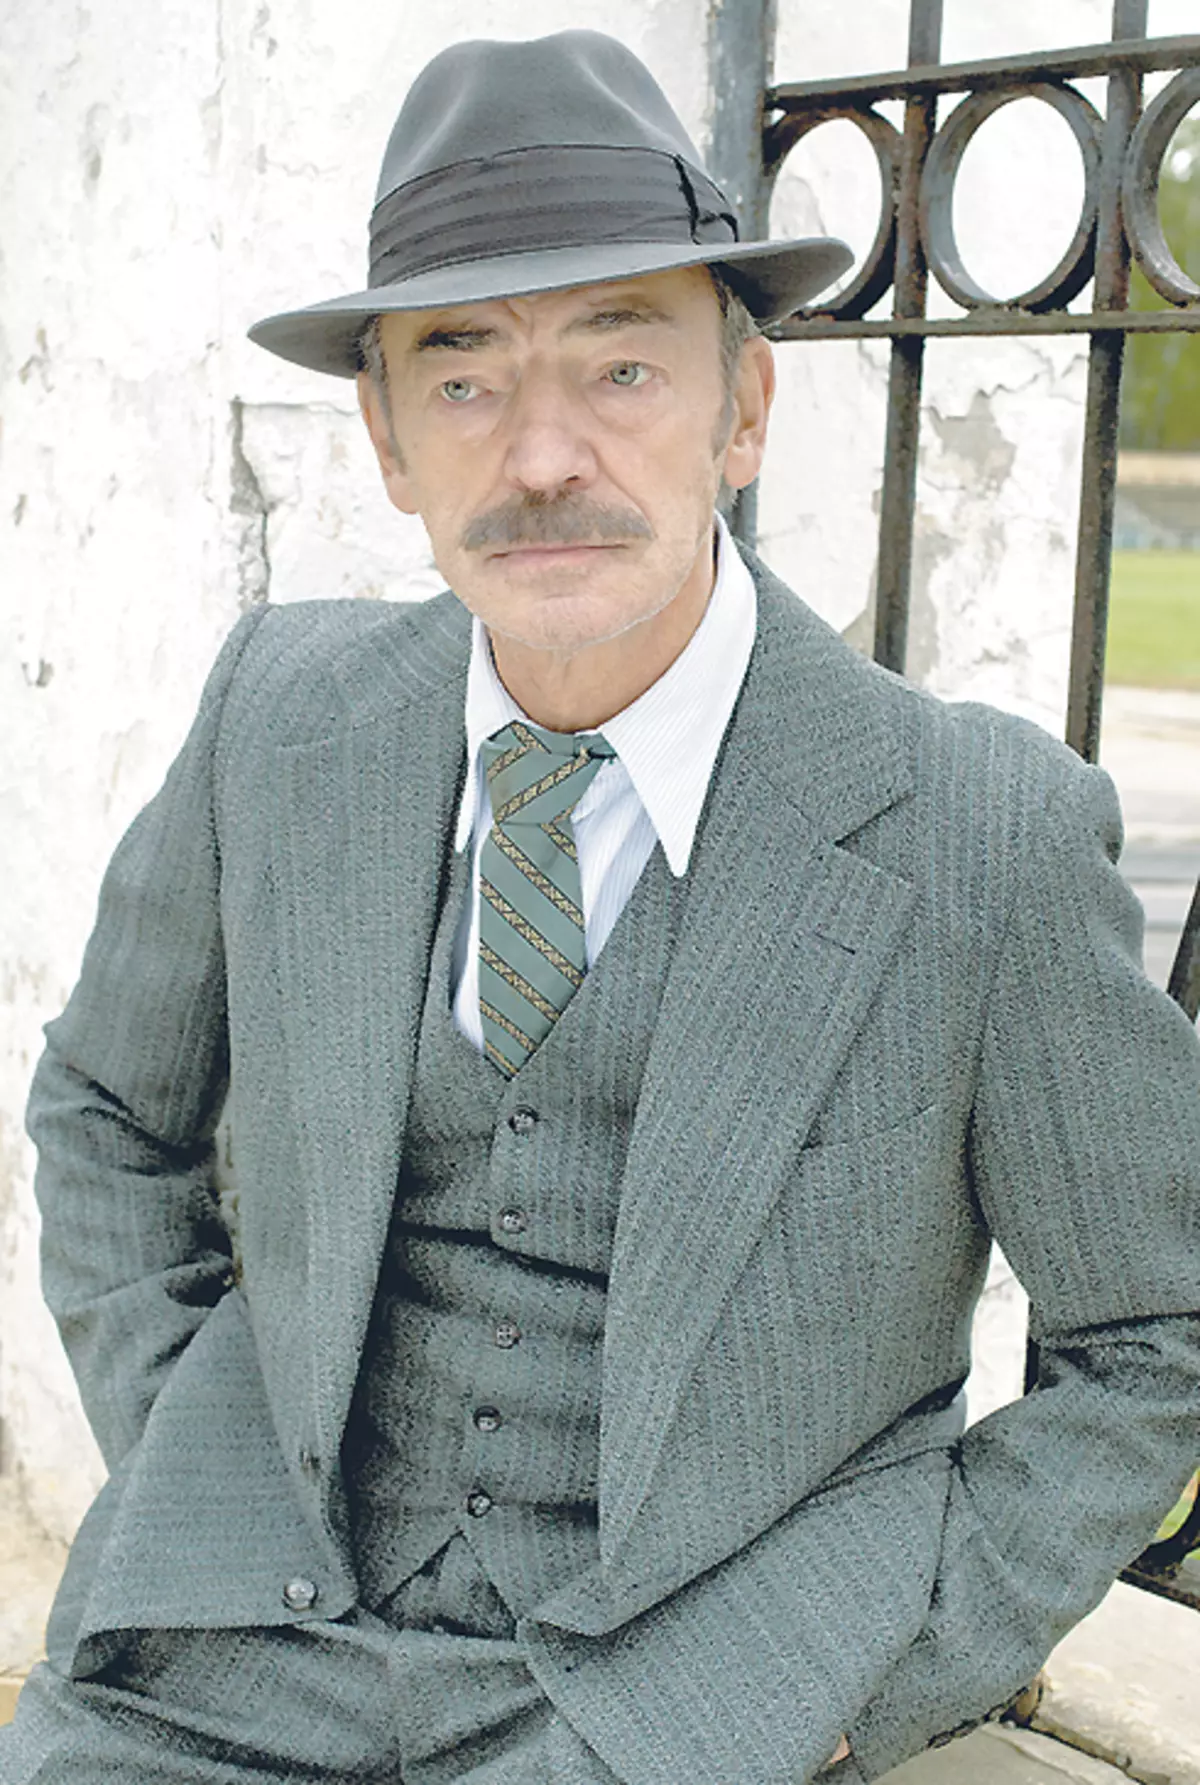 ظهر ميخائيل بويارسكي في السلسلة في شكل والد أندريه جارانينا - أفضل صديق إيفان ميشينا